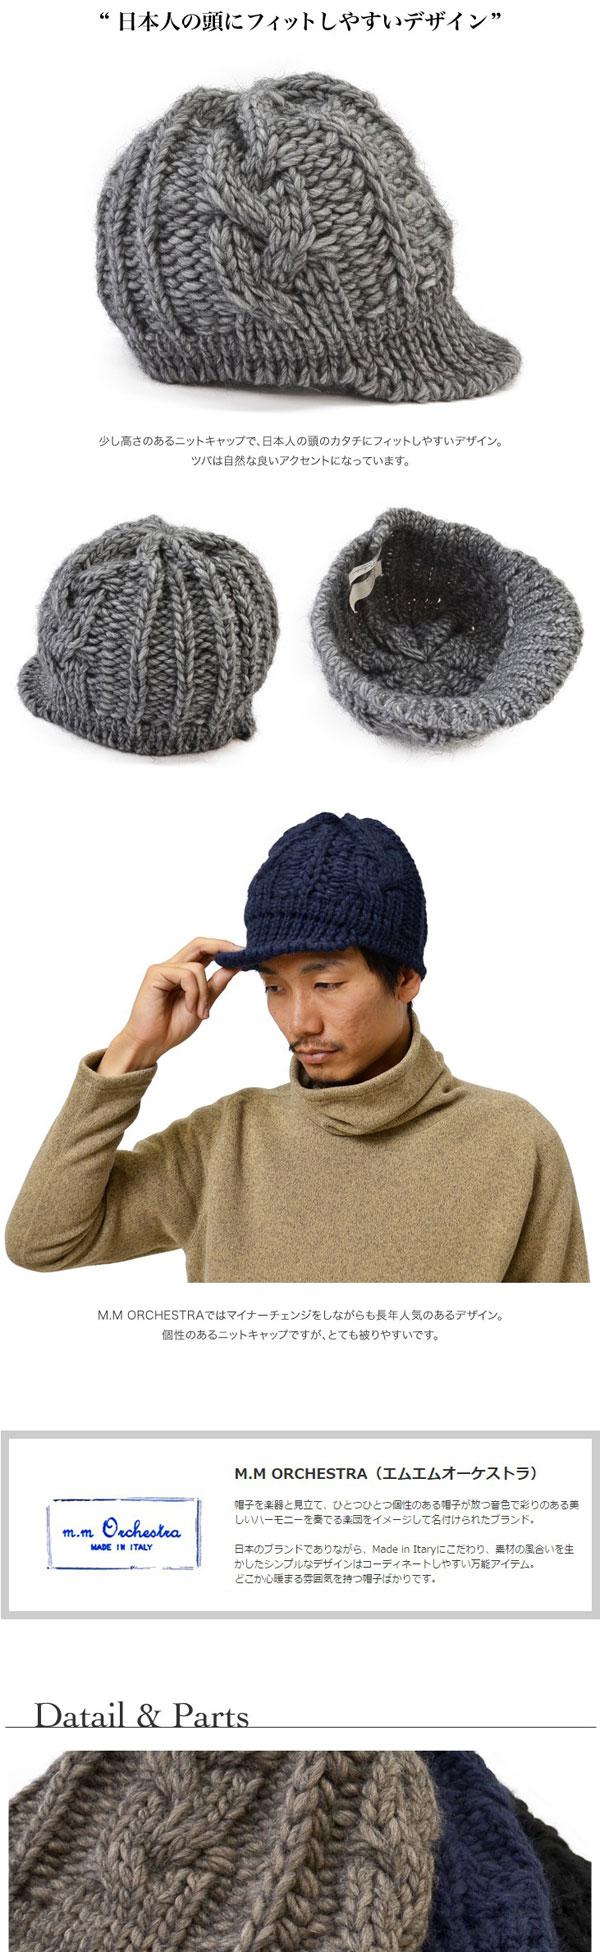 M.M ORCHESTRA Low-gauge cable-knit knit cap